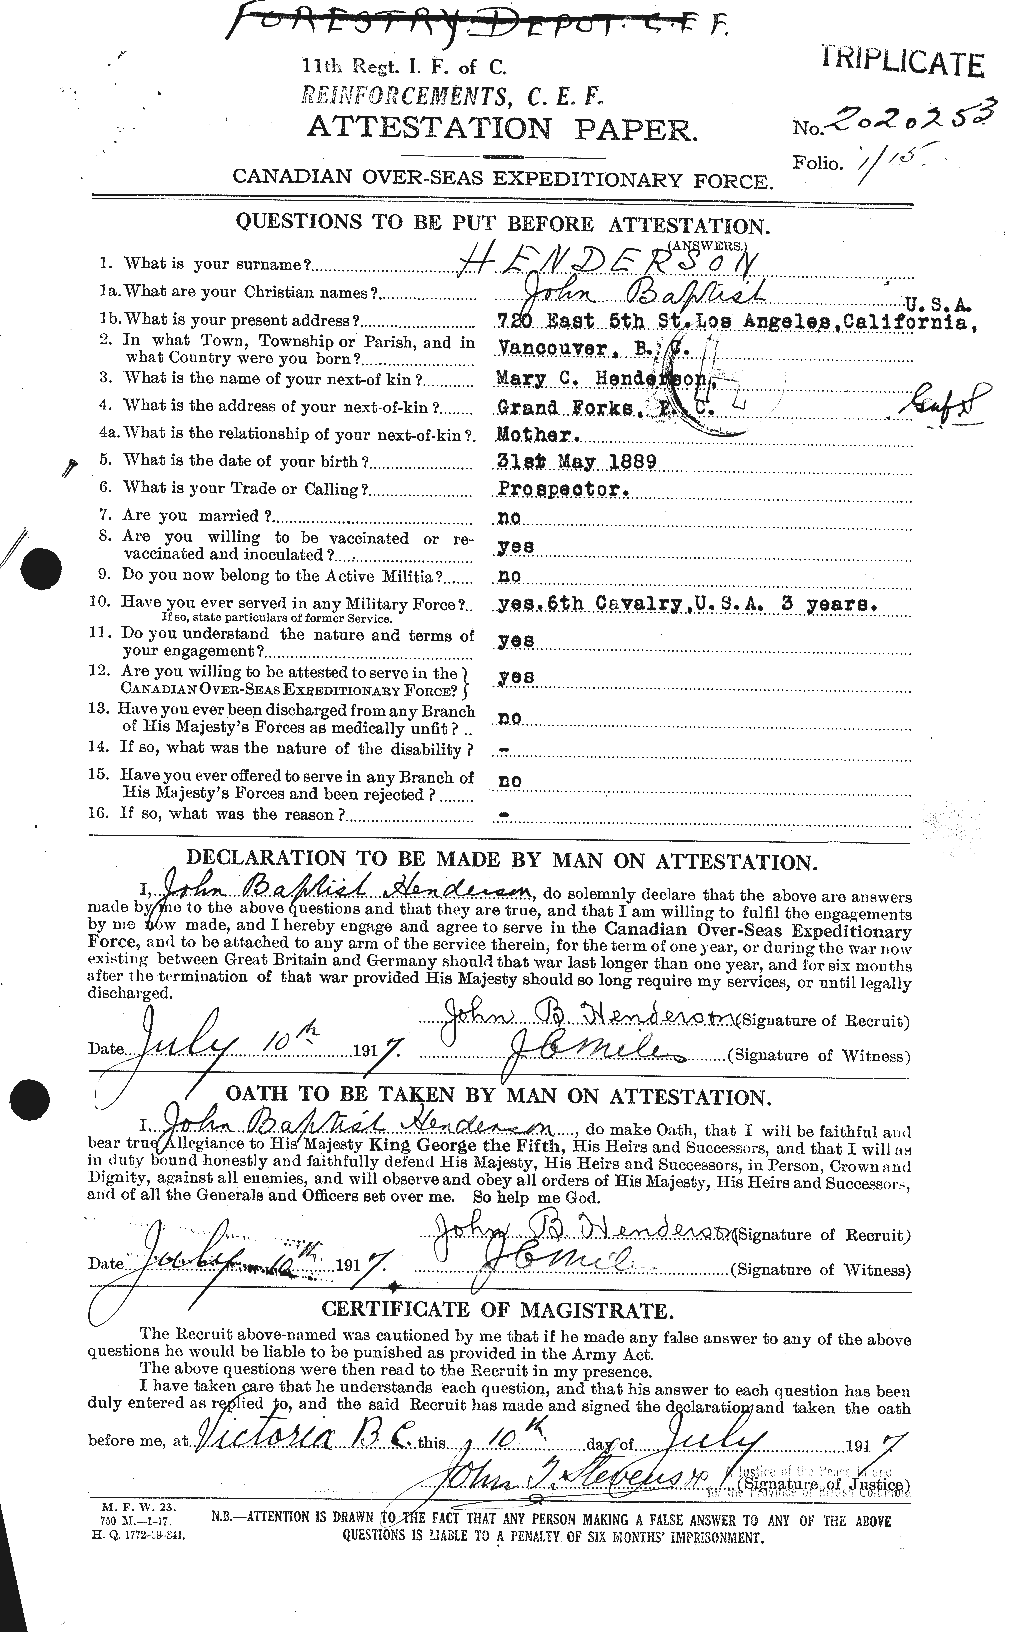 Dossiers du Personnel de la Première Guerre mondiale - CEC 392514a